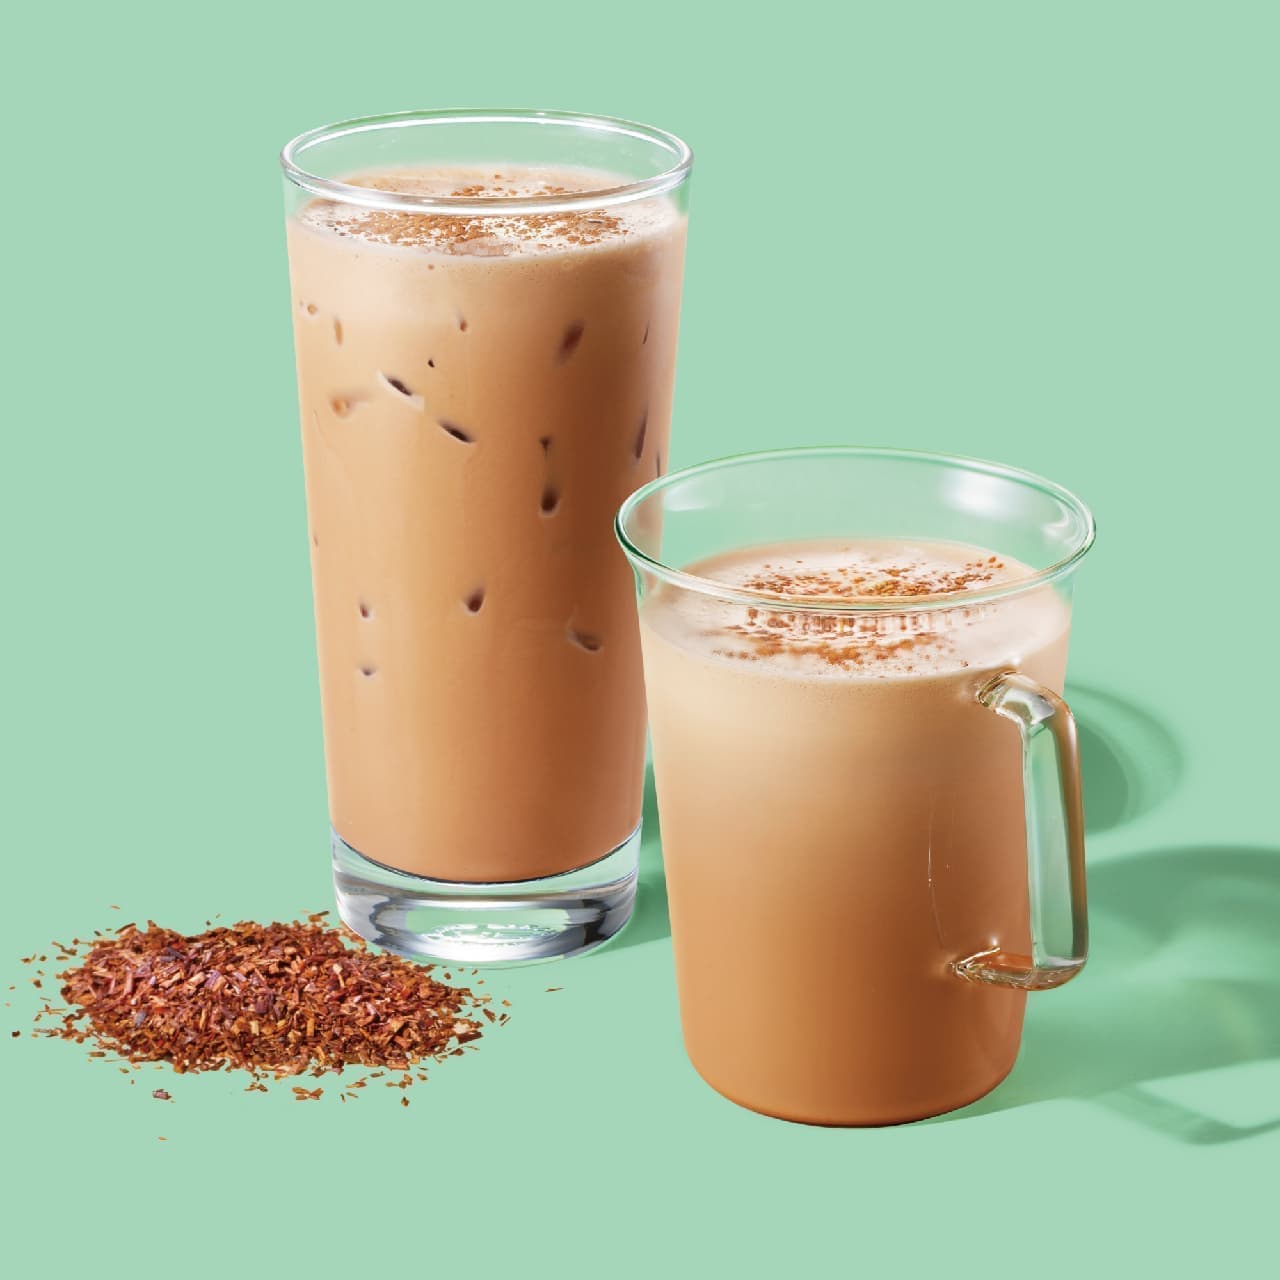 Starbucks Tea & Cafe "Rooibos Tea Latte